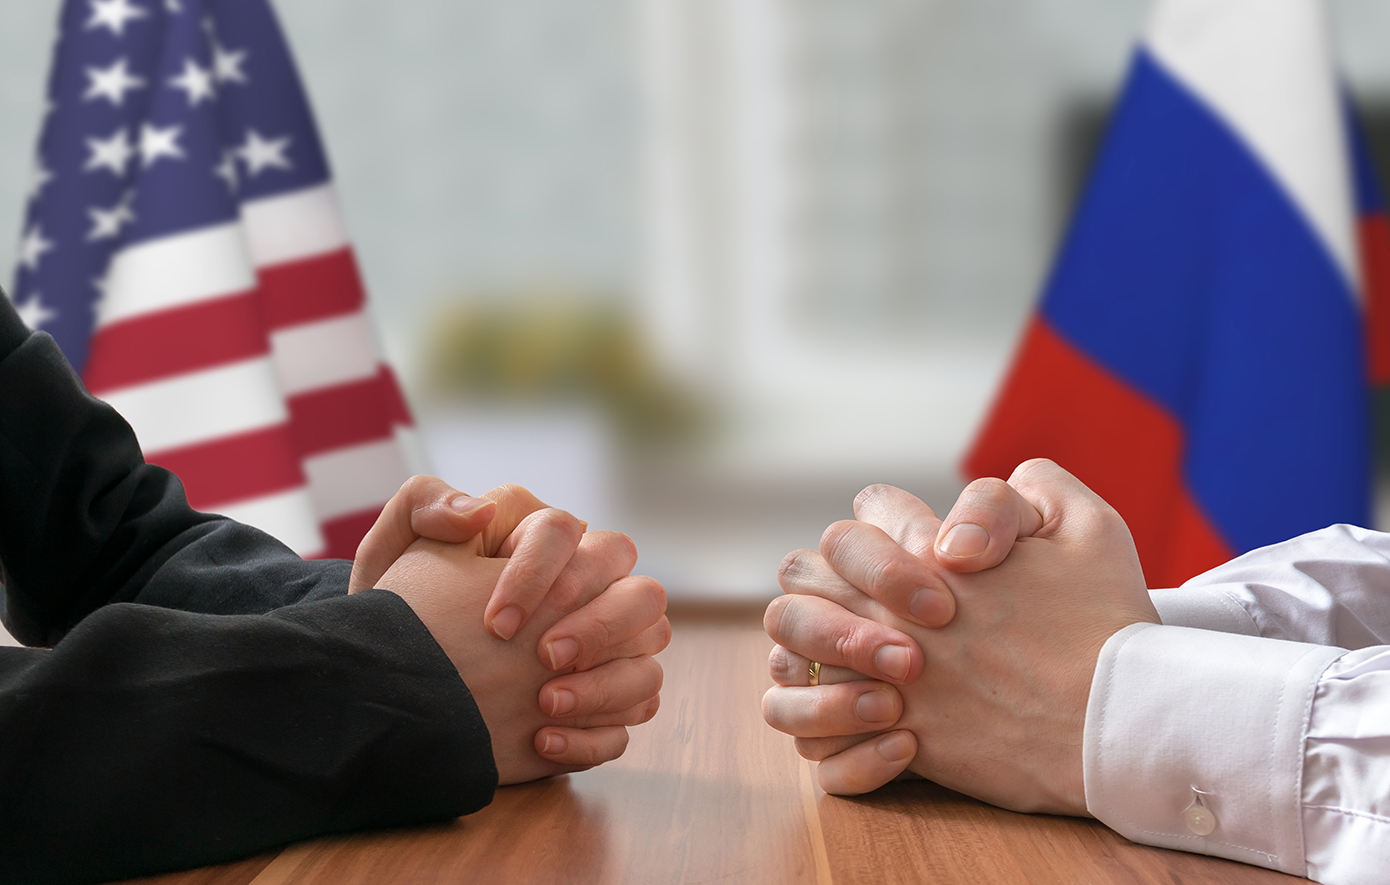 Ρωσία προς ΗΠΑ: Ναι στο διάλογο, αλλά στην ατζέντα πρέπει να συμπεριληφθεί η Ουκρανία